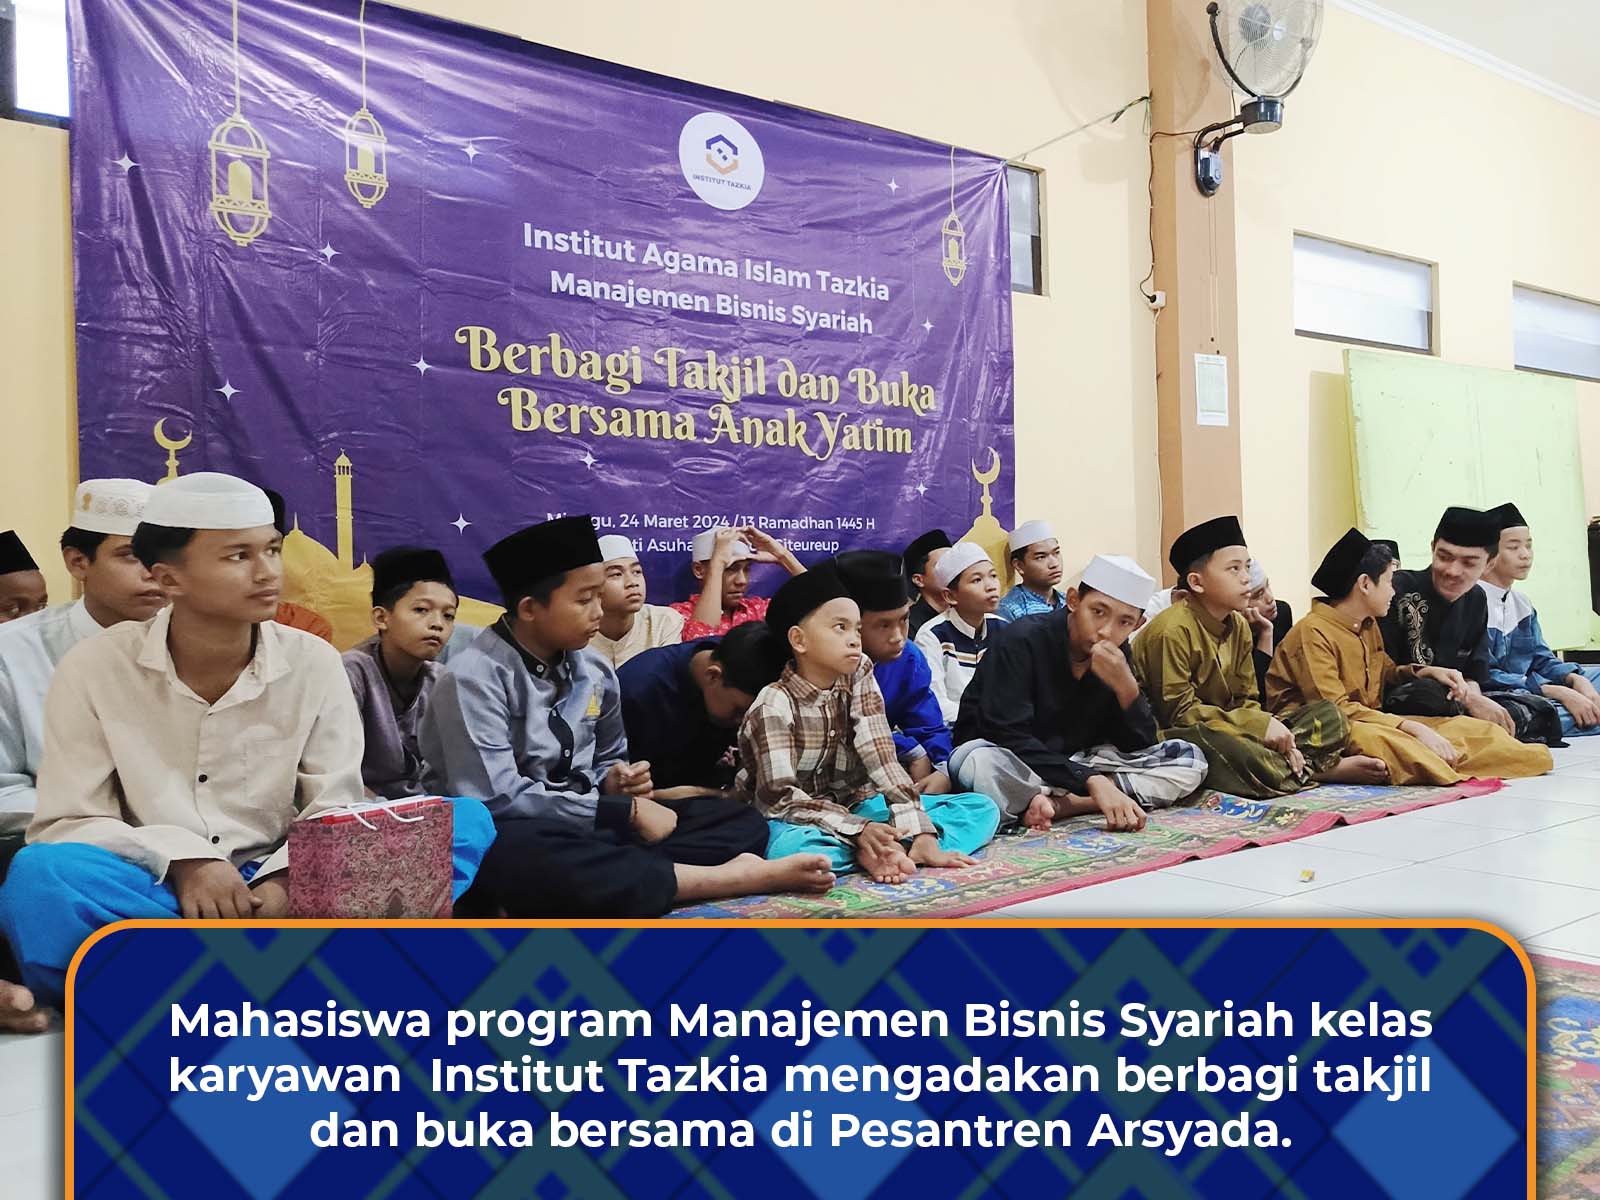 Mahasiswa Karyawan Manajemen Bisnis Syariah Institut Tazkia Berbagi Takjil dan Buka Bersama di Pesantren Arsyada